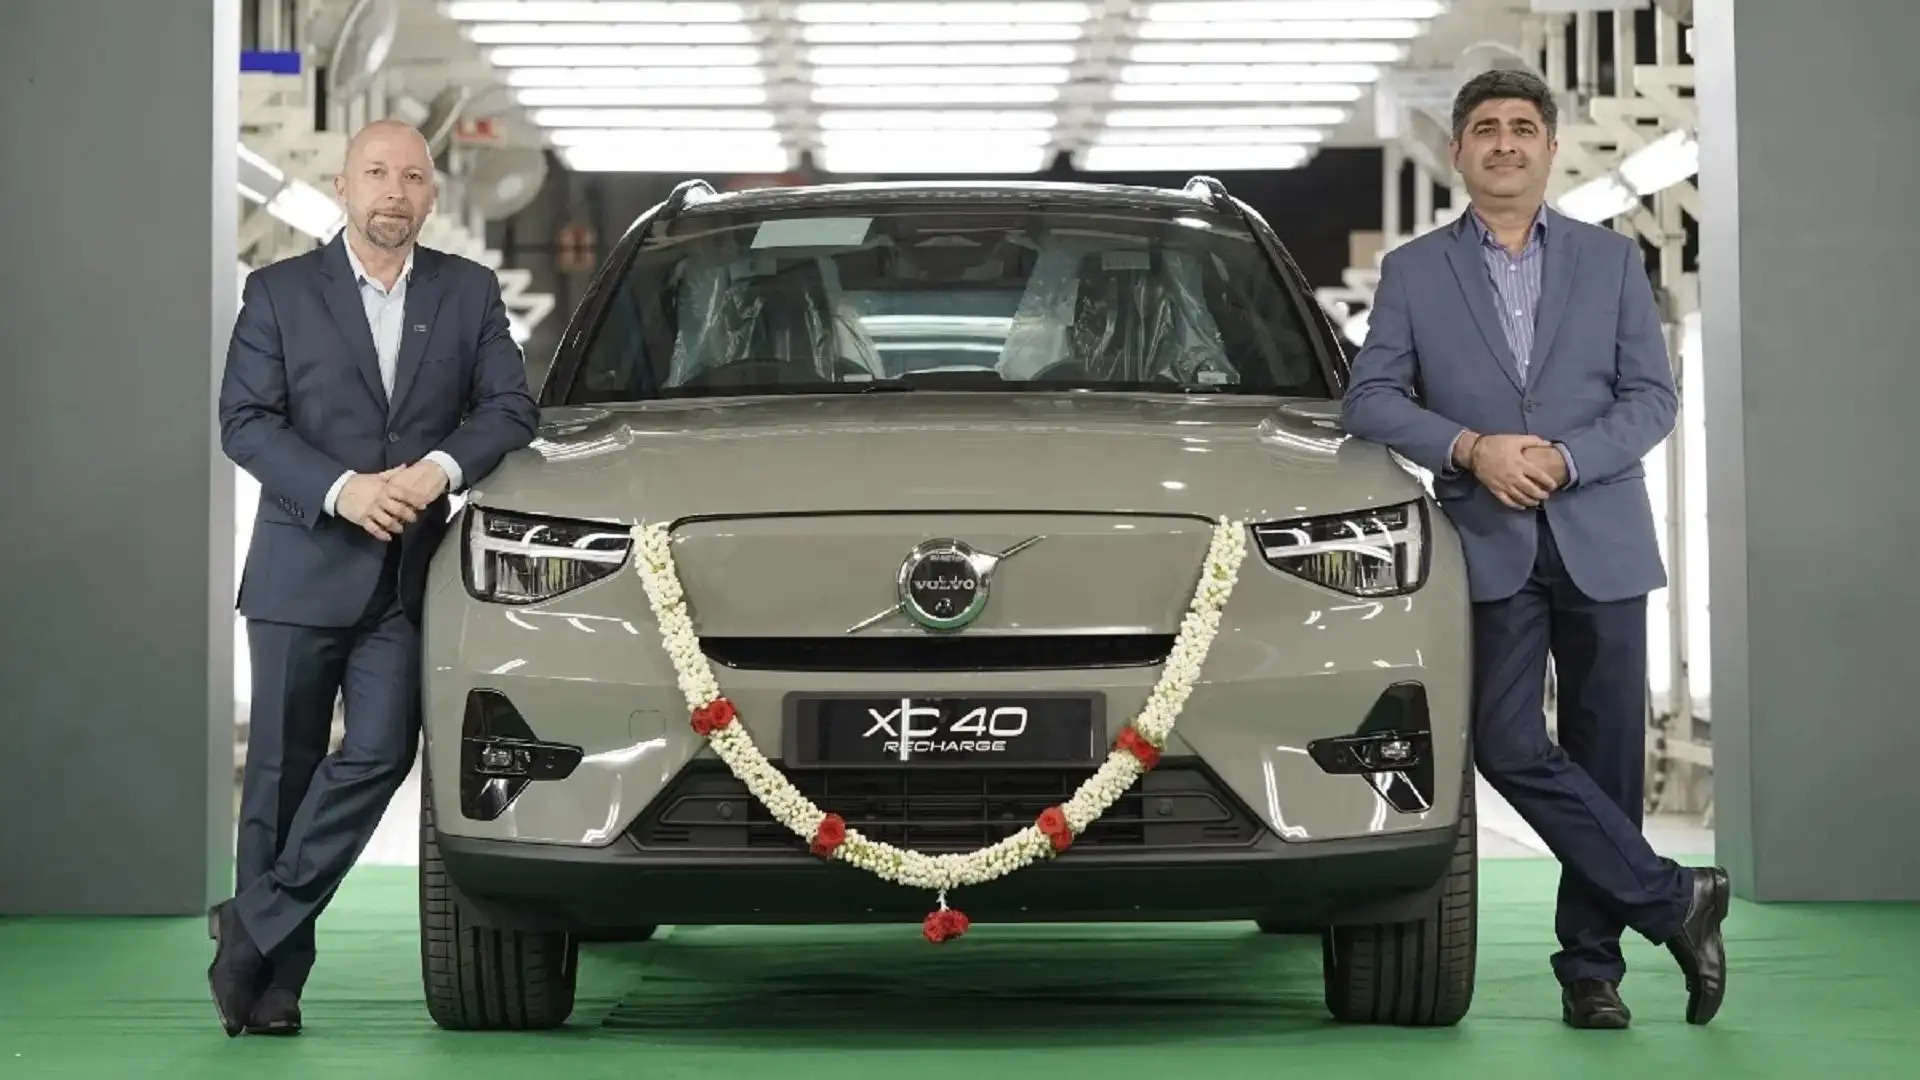 स्वीडिश लग्जरी कार निर्माता Volvo Car India (वॉल्वो कार इंडिया) ने गुरुवार को अपने चुनिंदा मॉडलों जैसे XC90(एक्ससी90), XC60 (एक्ससी60) और XC40 (एक्ससी40) की कीमतों में बढ़ोतरी का एलान किया। कंपनी ने कहा कि उसे 'बढ़ते इनपुट लागत दबाव' के कारण नई कीमतों में बढ़ोतरी की घोषणा करने के लिए मजबूर होना पड़ा है।